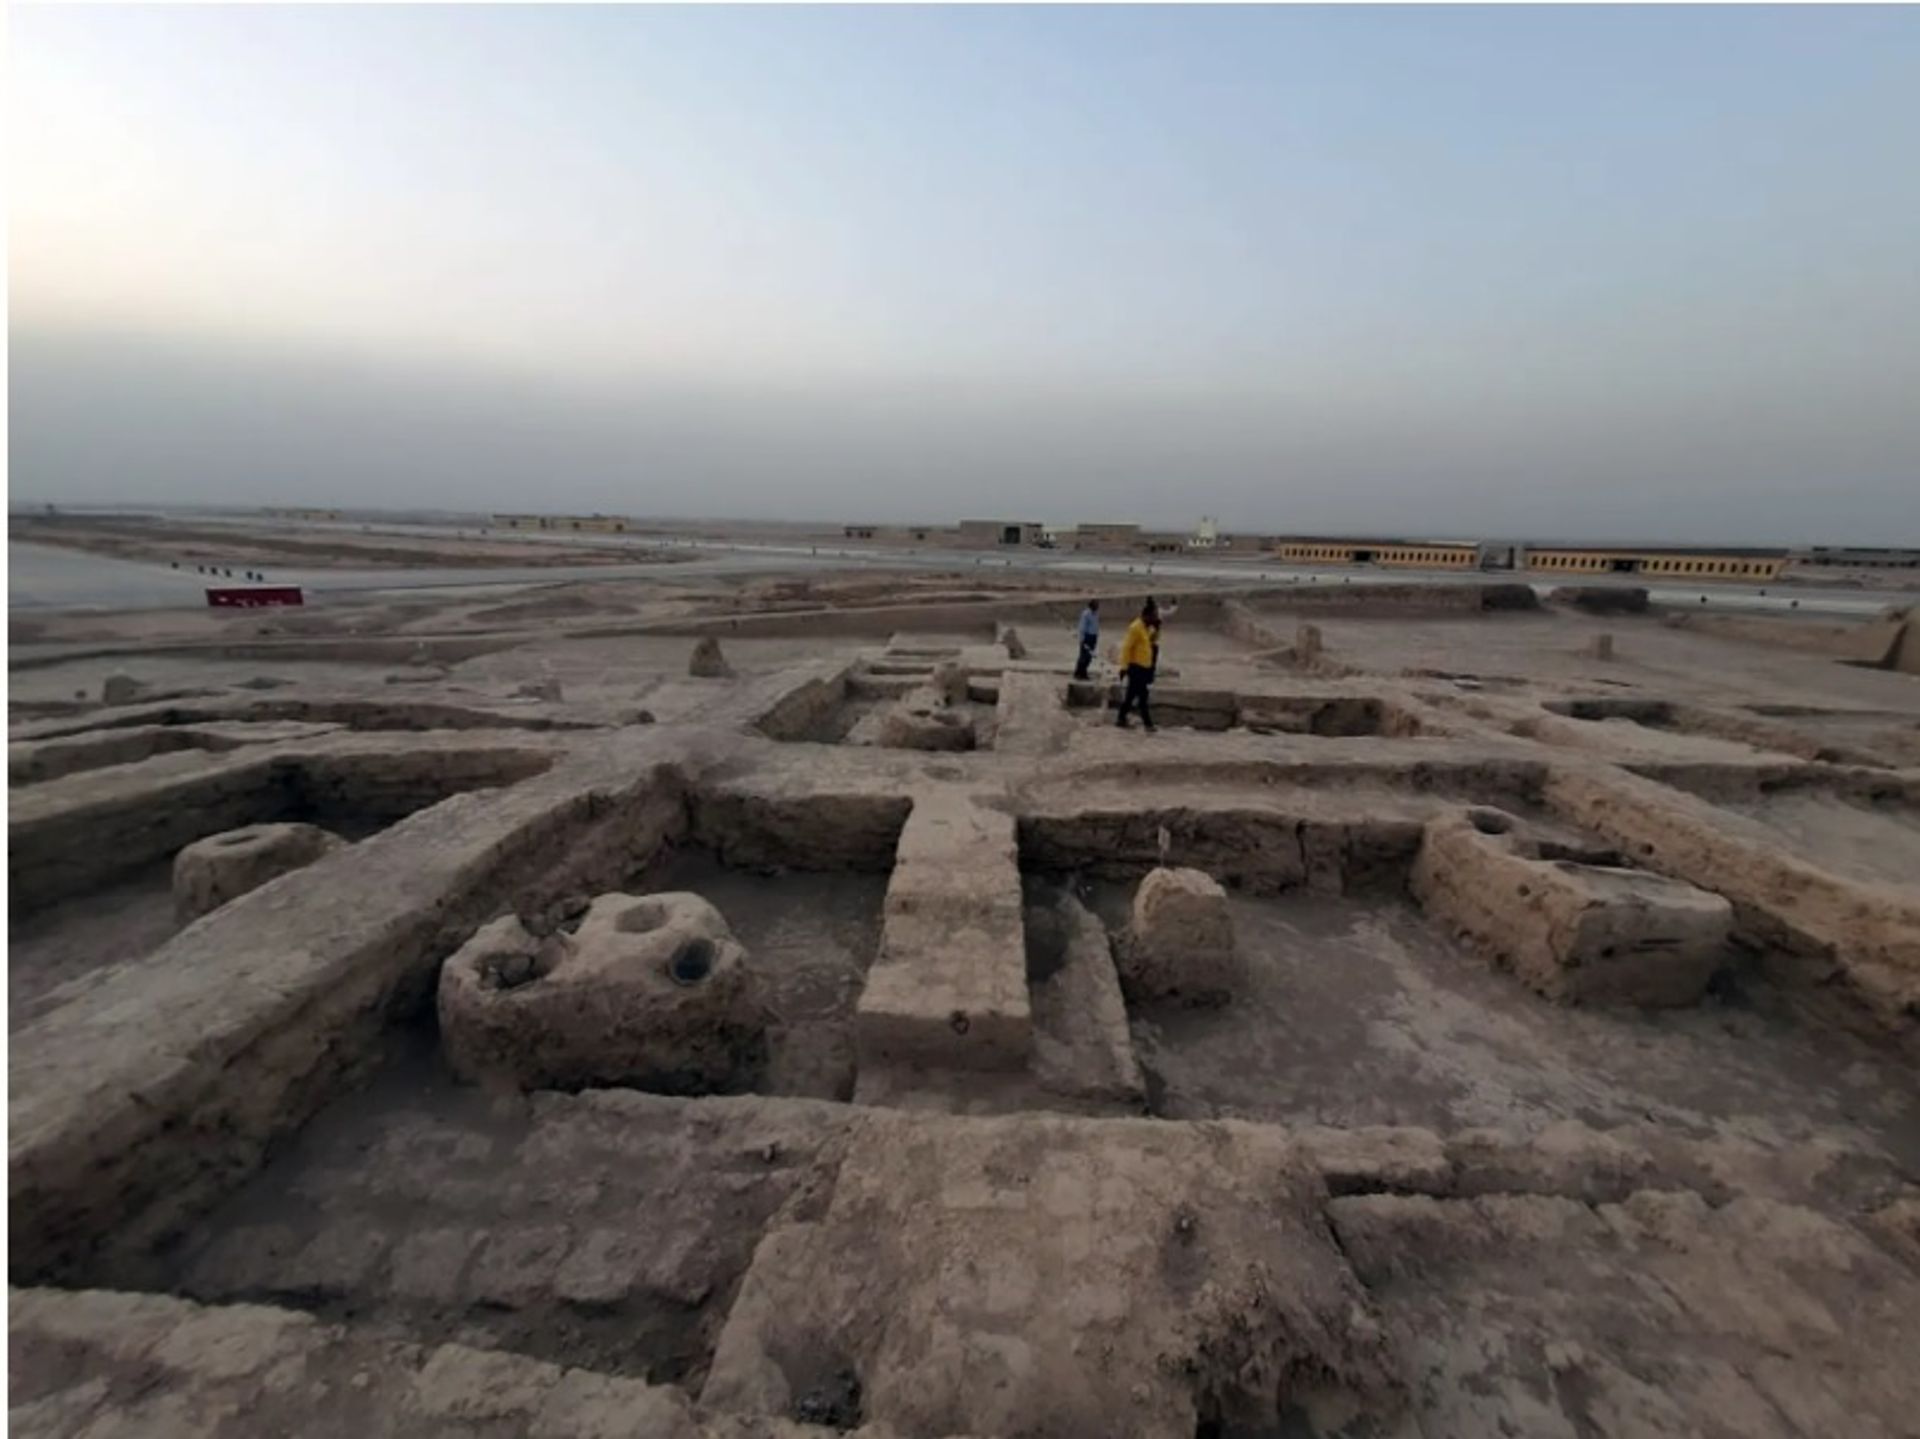 אתר פרתי התגלה מדרום לבגדד

באדיבות מועצת העתיקות והמורשת של עיראק